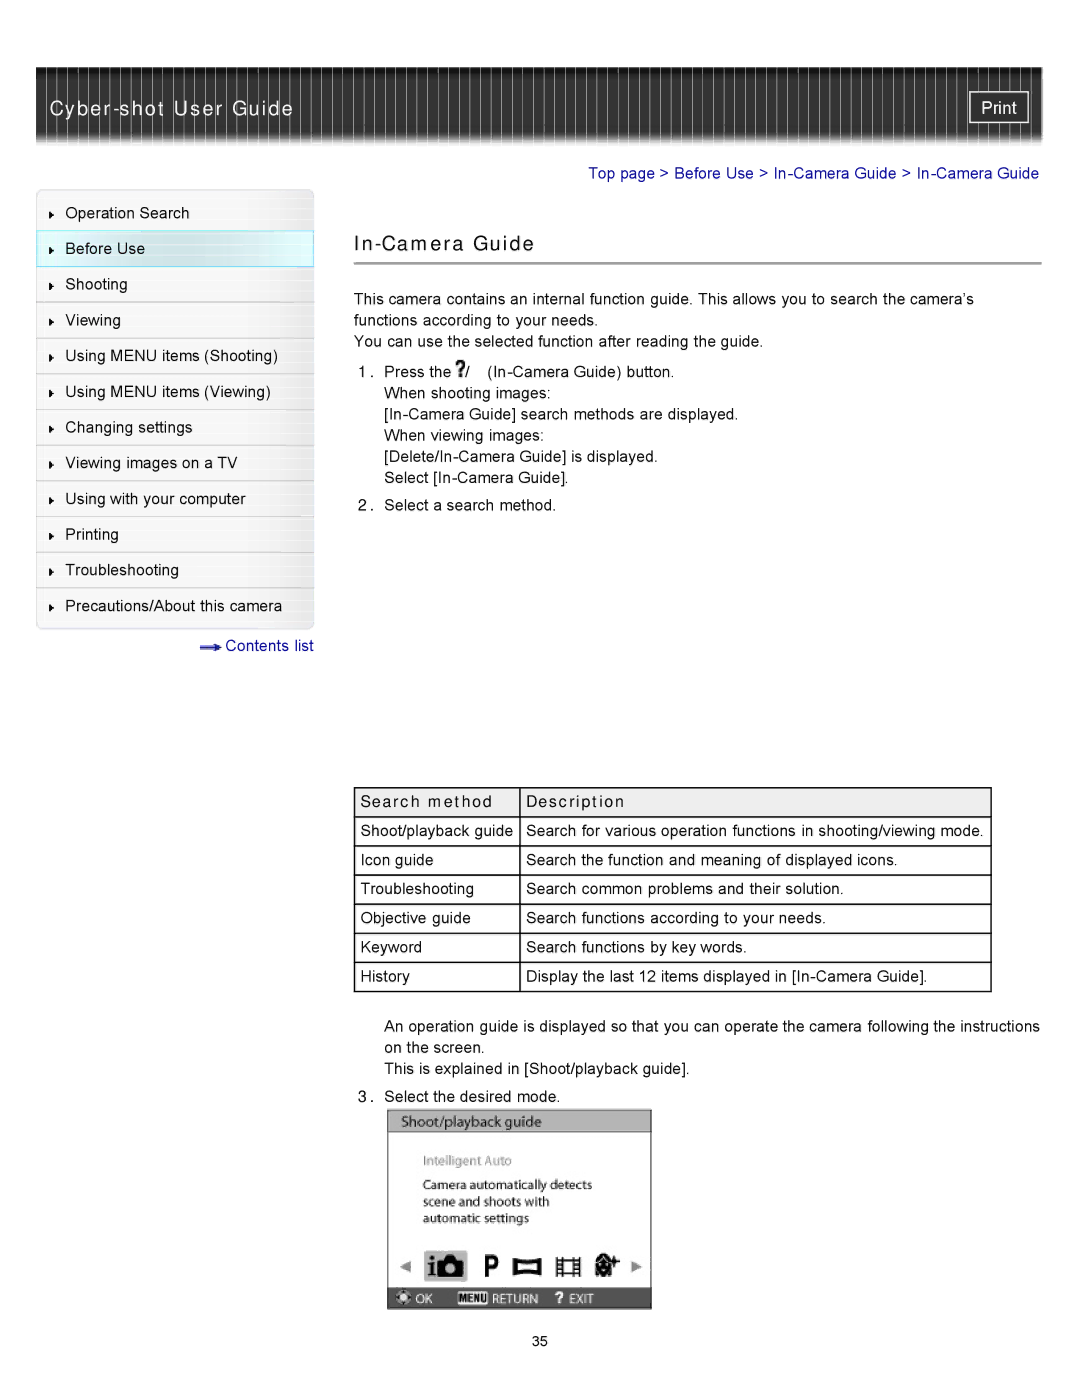 Sony DSC-W570D, DSC-W580 manual In-Camera Guide, Search method Description 